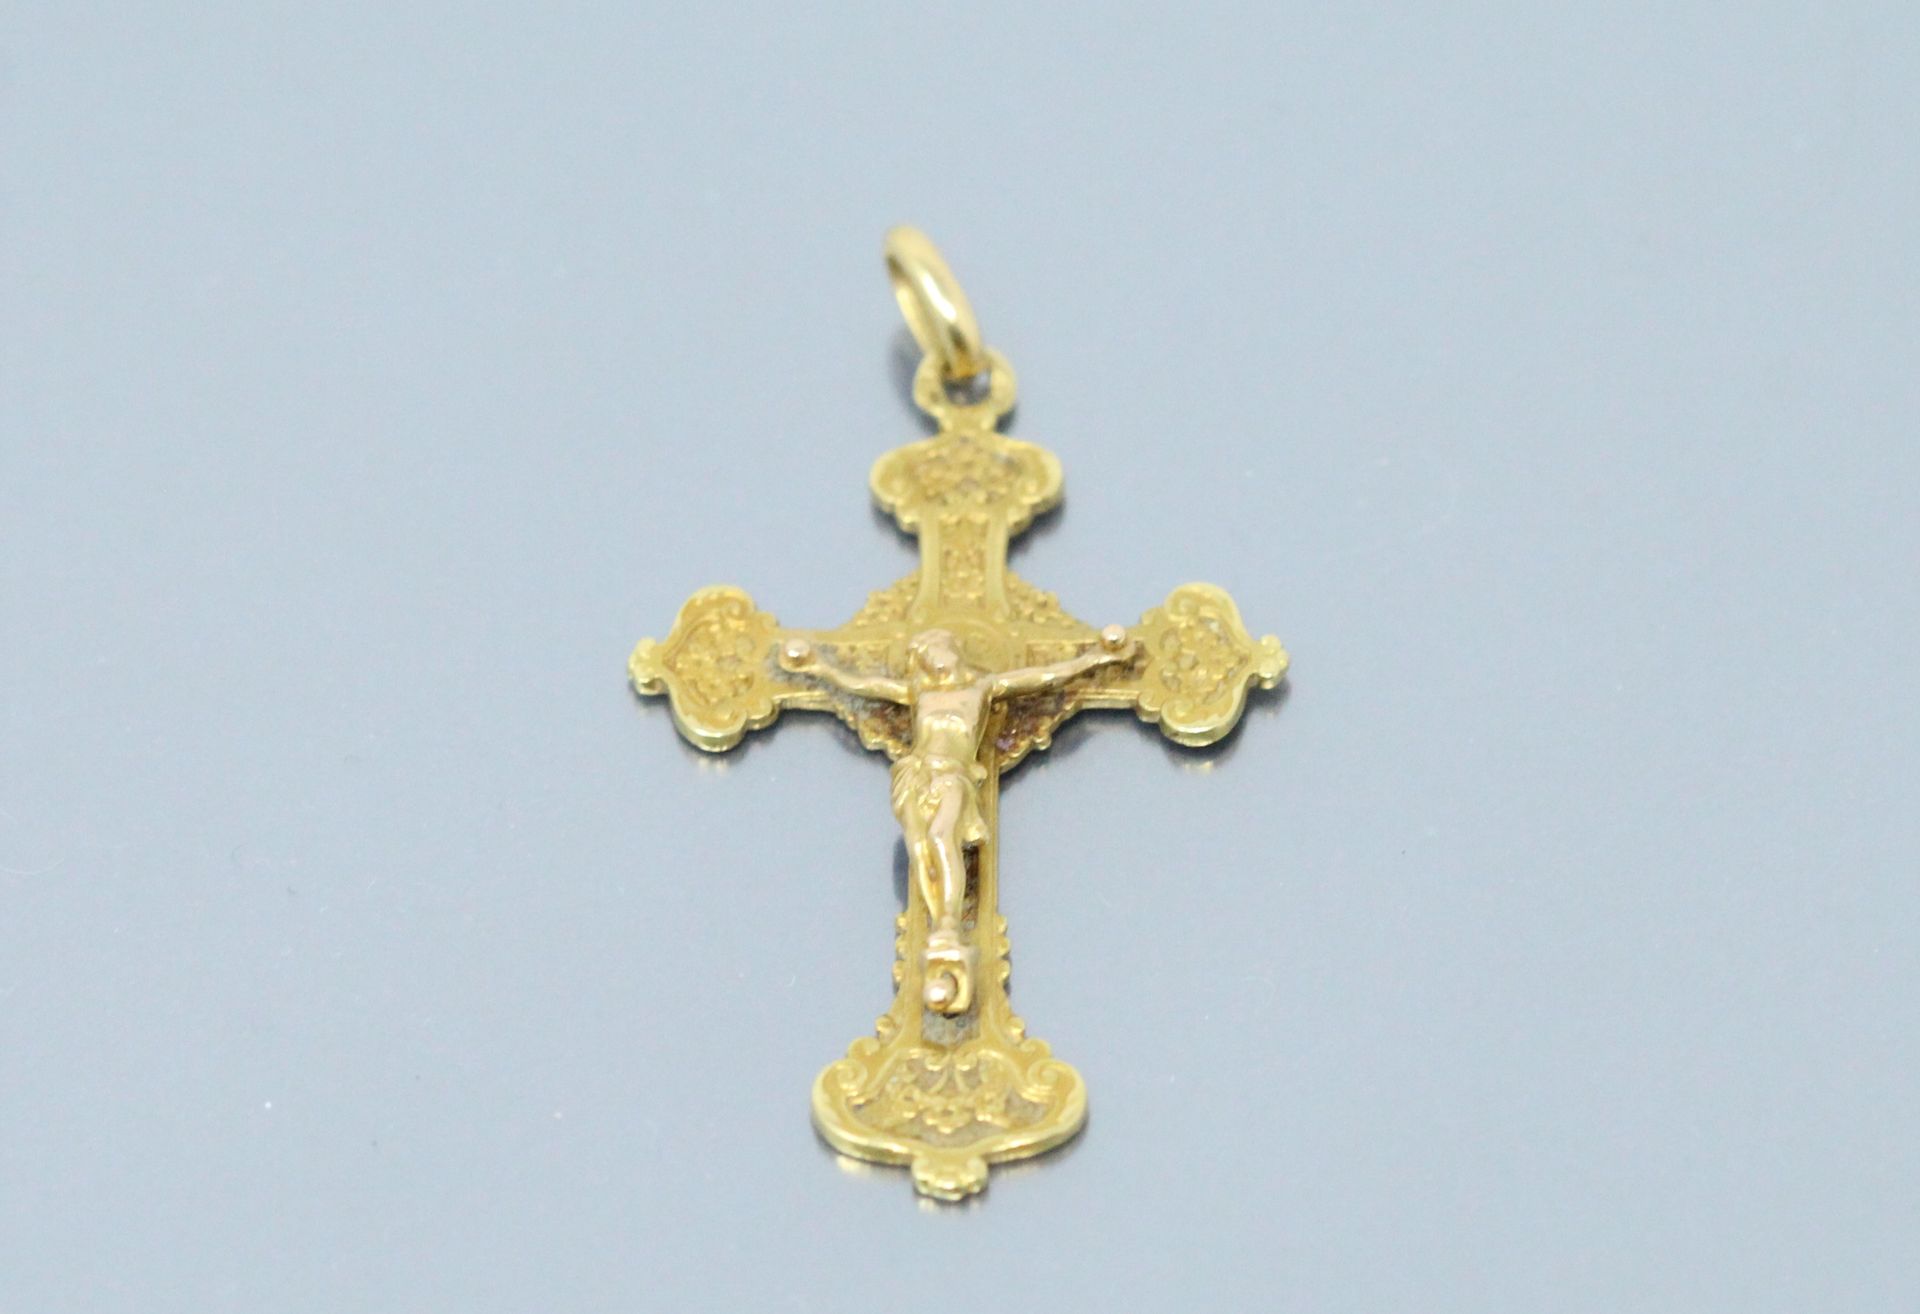 Null Croix pendentif en or jaune 18k (750).

Haut. : 3.60 cm - Poids : 3 g.